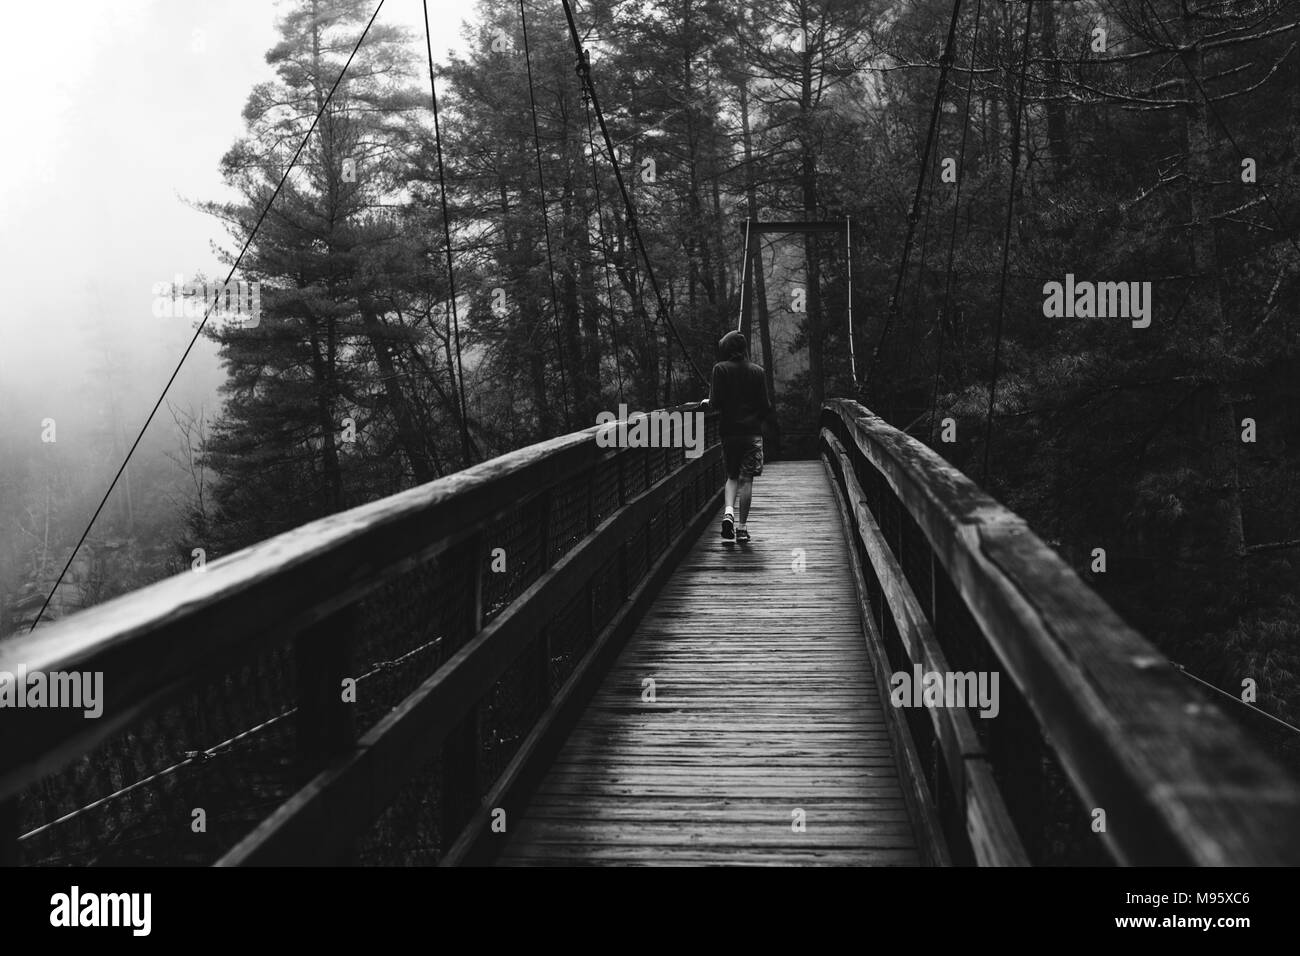 Un adolescent traverse le pont suspendu sur un matin pluvieux et brumeux au parc national des Gorges de Tallulah en Géorgie, USA. Banque D'Images